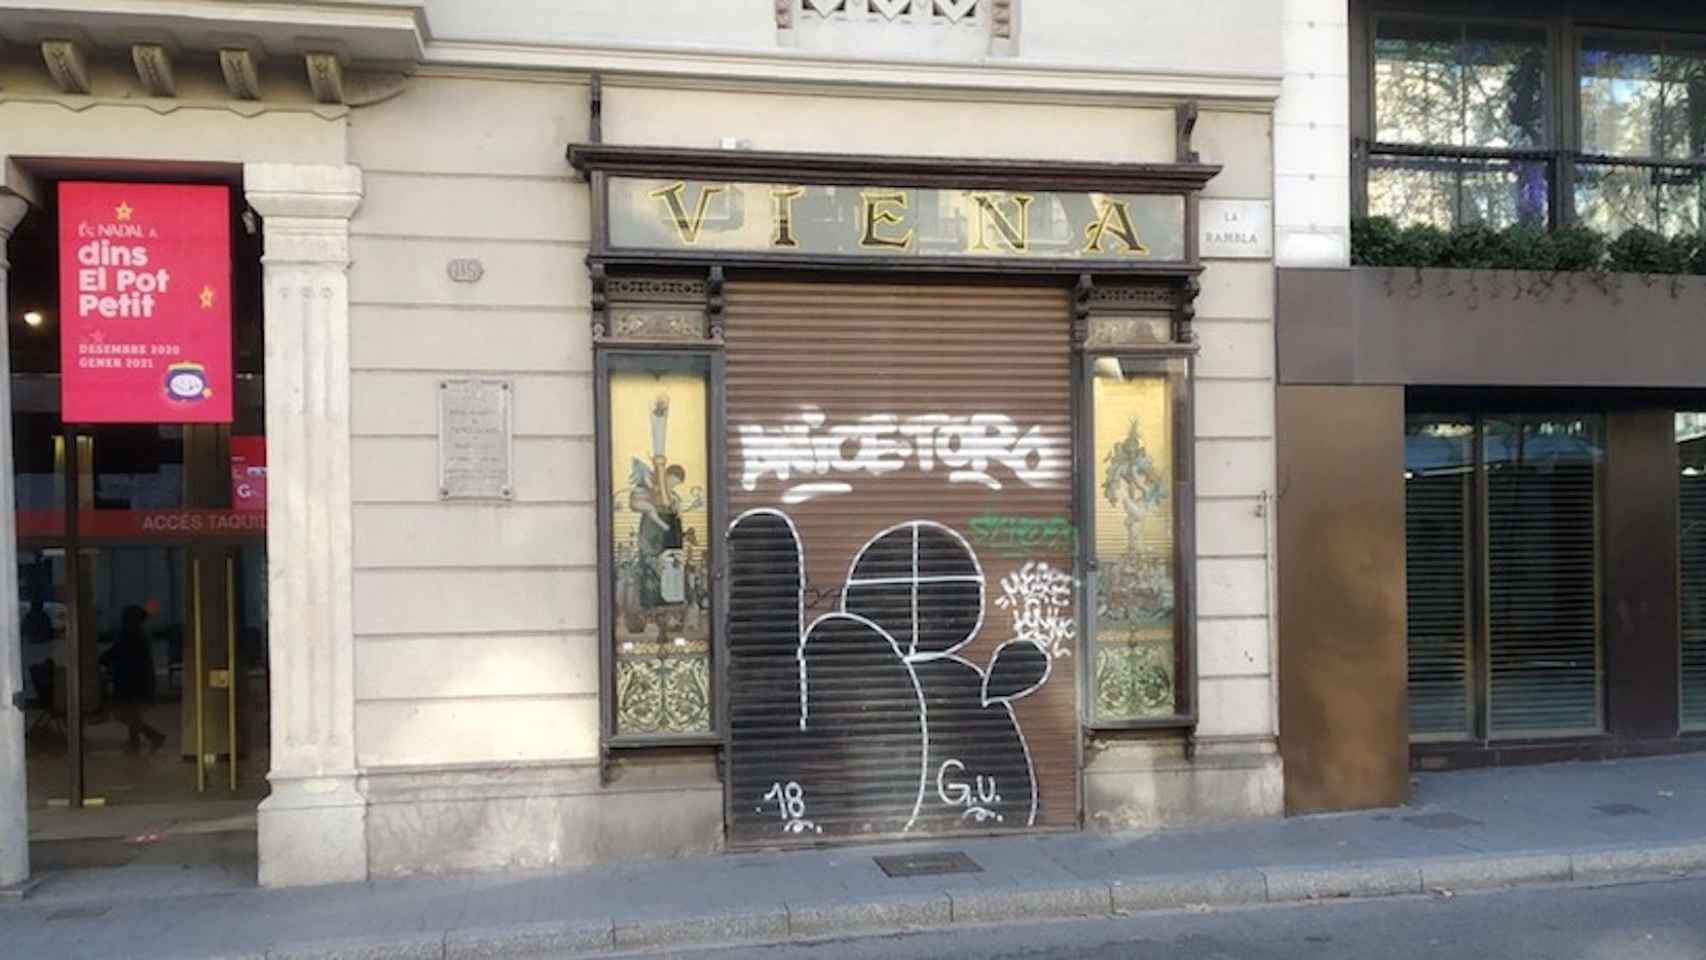 El histórico restaurante Viena de la Rambla, cerrado, este jueves / JORDI SUBIRANA